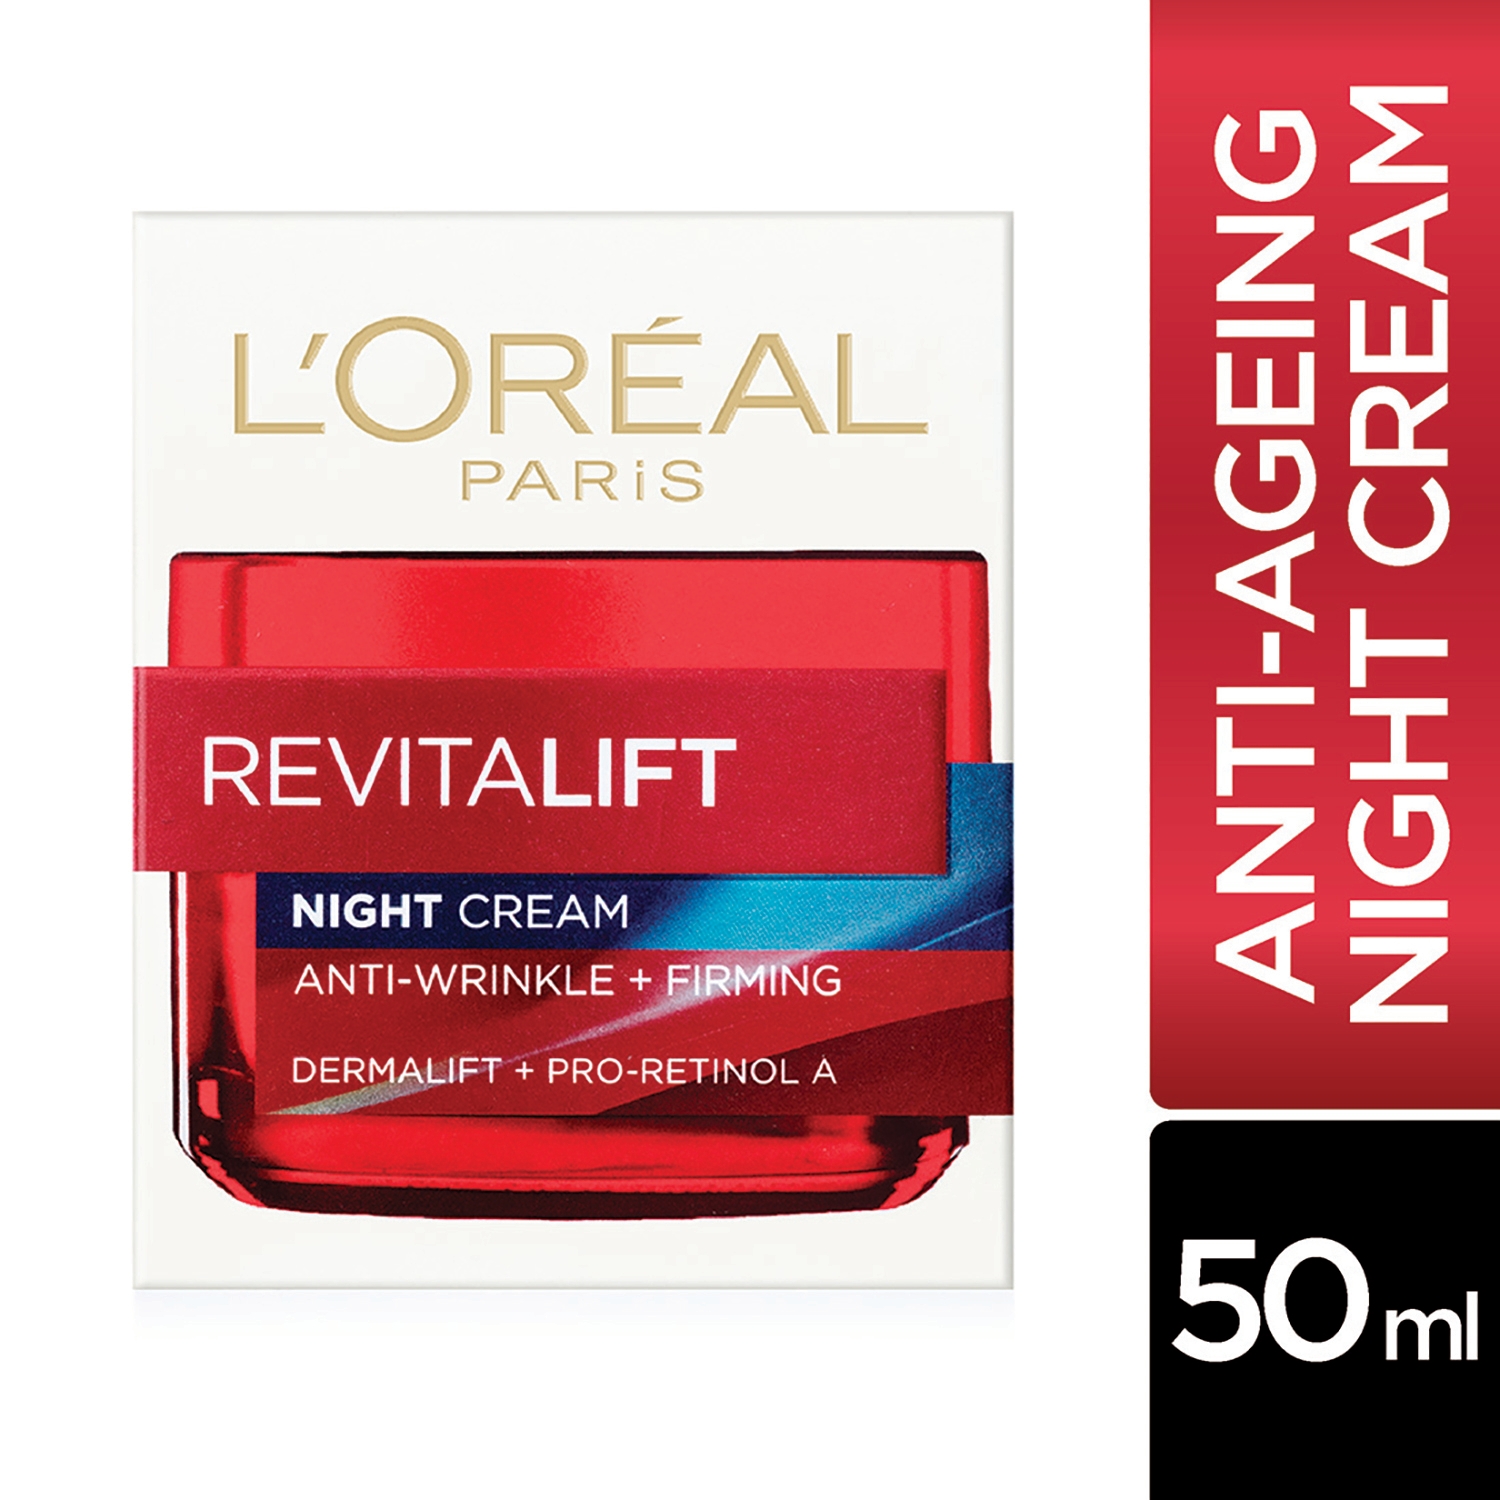 L'Oreal Paris | L'Oreal Paris Revitalift Moisturizing Night Cream (50ml)